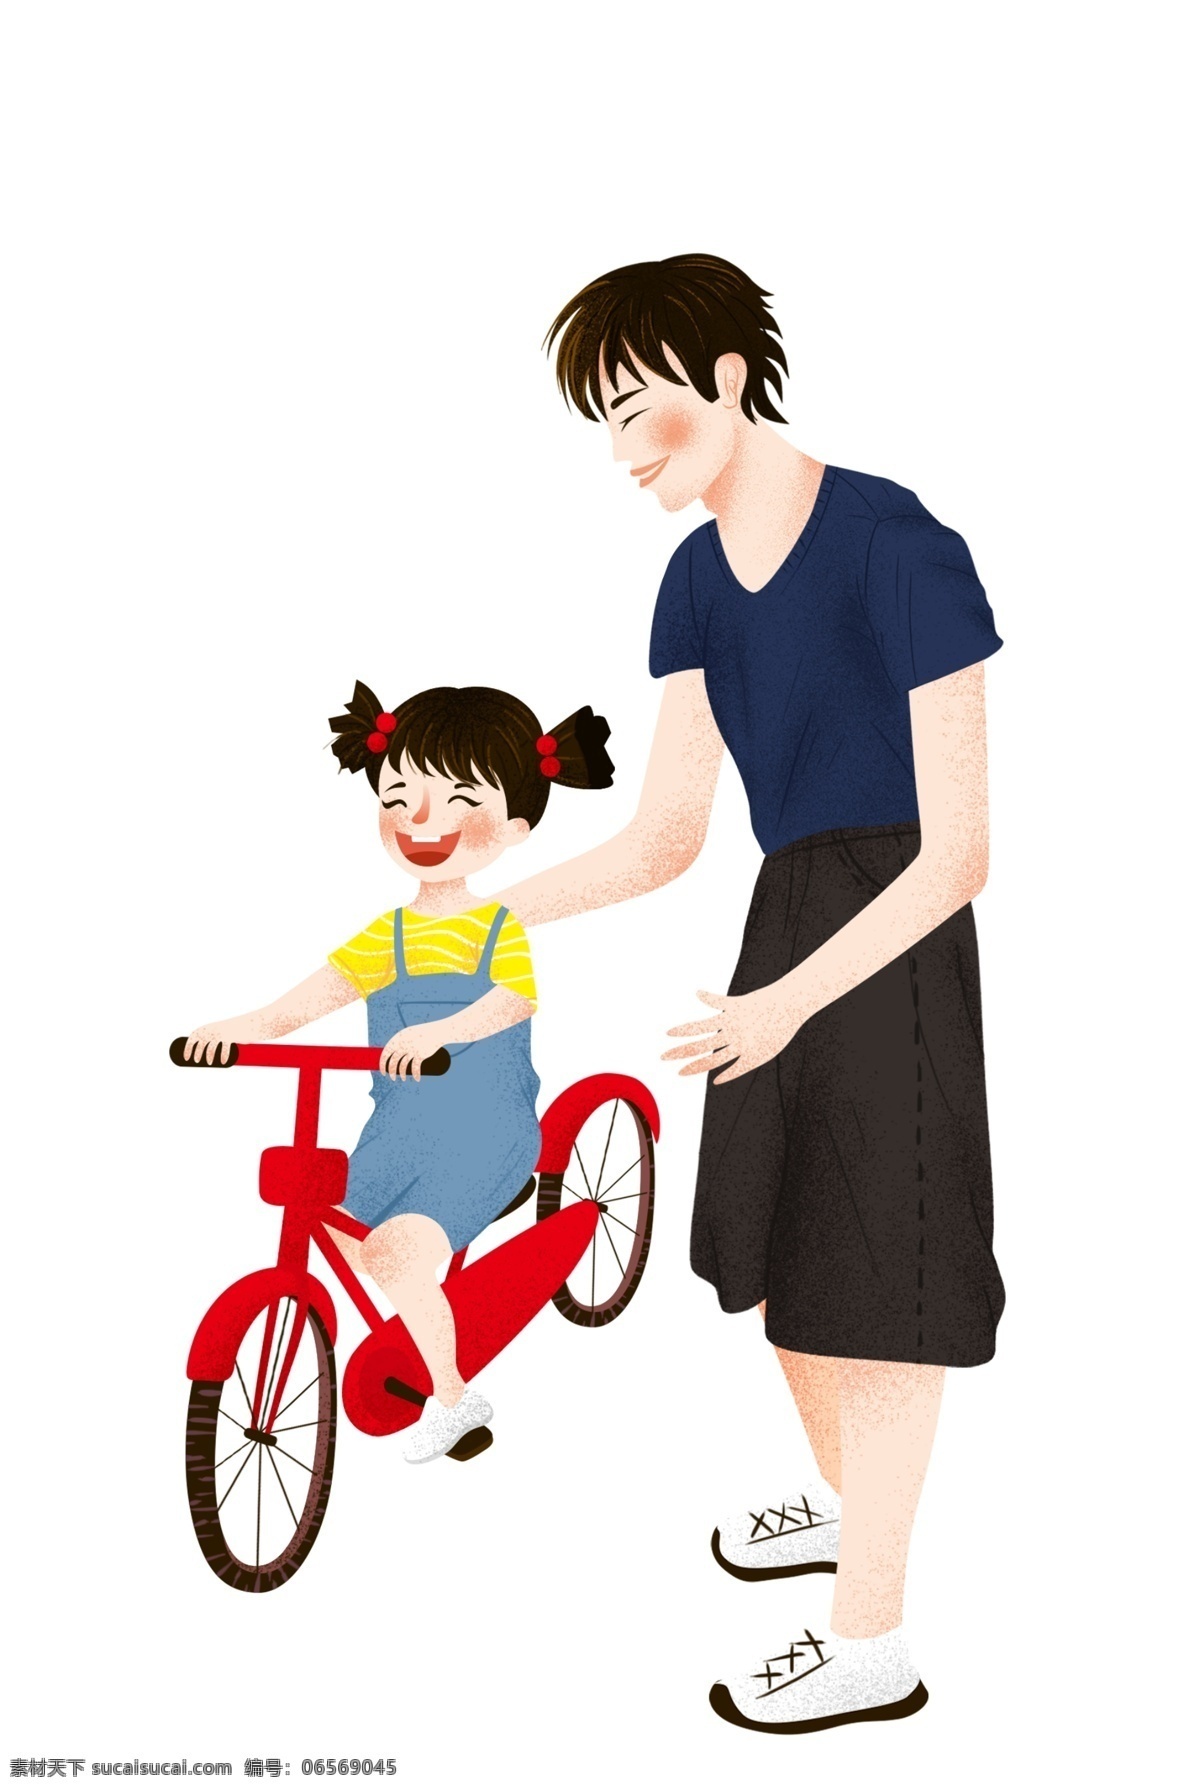 教 女儿 骑 自行车 父亲 节日 元素 红色 父亲节 儿童节 卡通人物 节日元素 元素设计